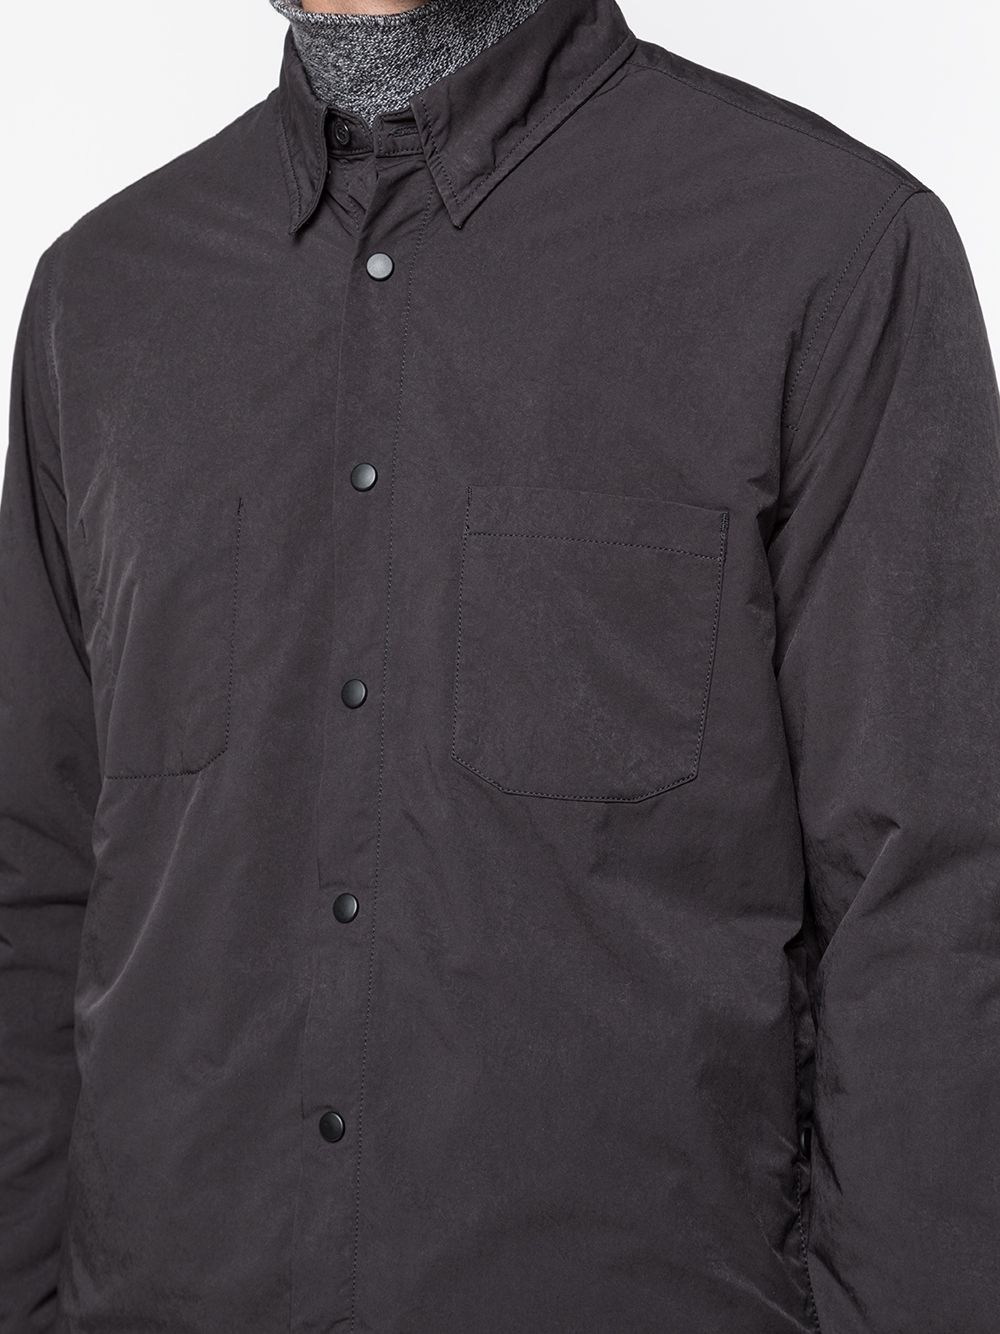 shirt jacket - 5